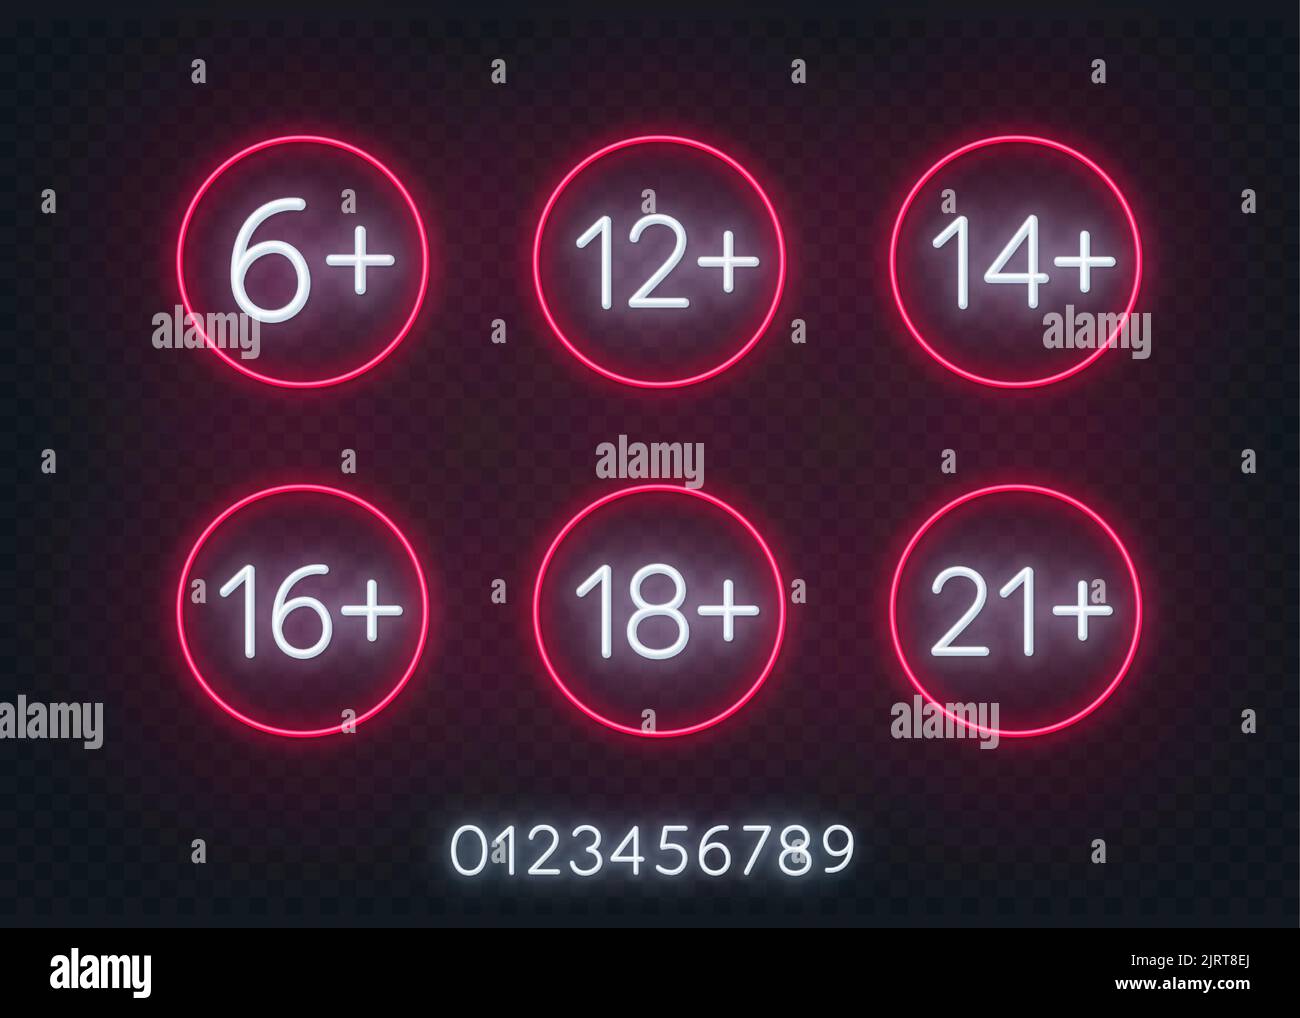 Neonzeichen der Altersgrenze 6, 12, 14,16,18 und 21 plus auf transparentem Hintergrund. Symbole für Altersbeschränkungen. Stock Vektor